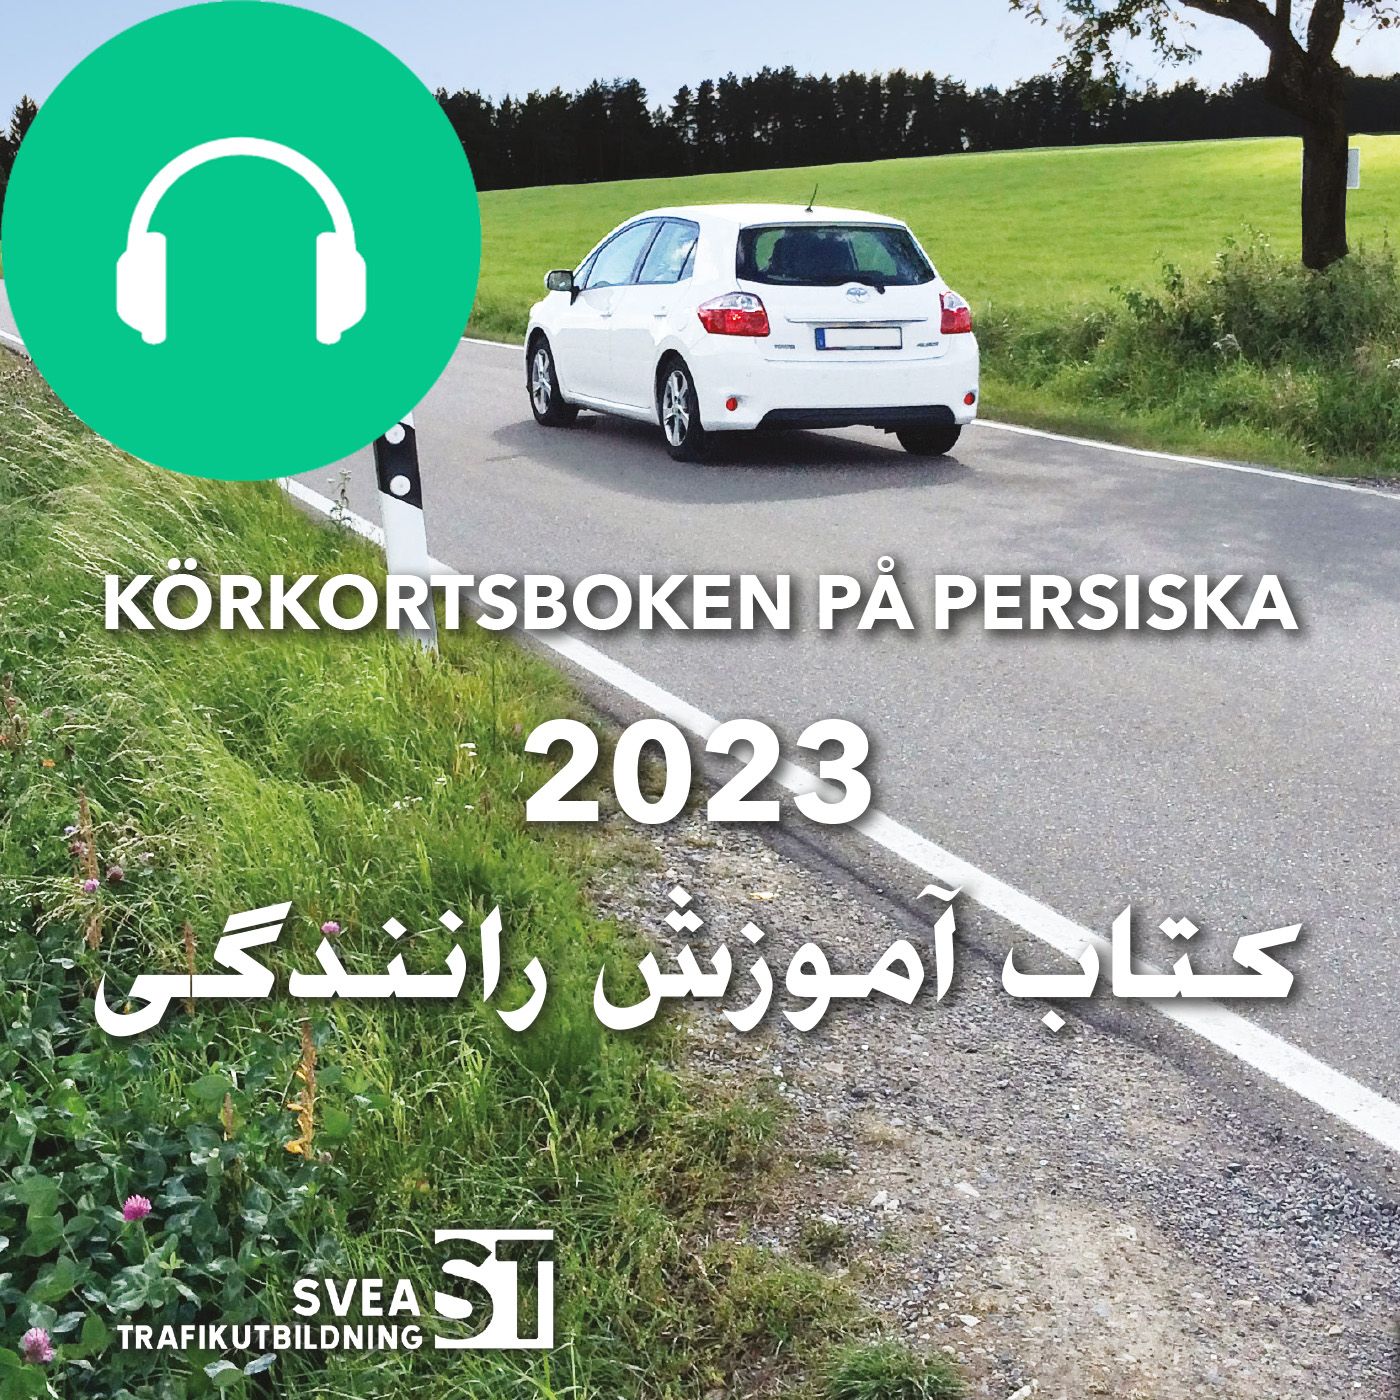 Körkortsboken på Persiska 2023, audiobook by Svea Trafikutbildning